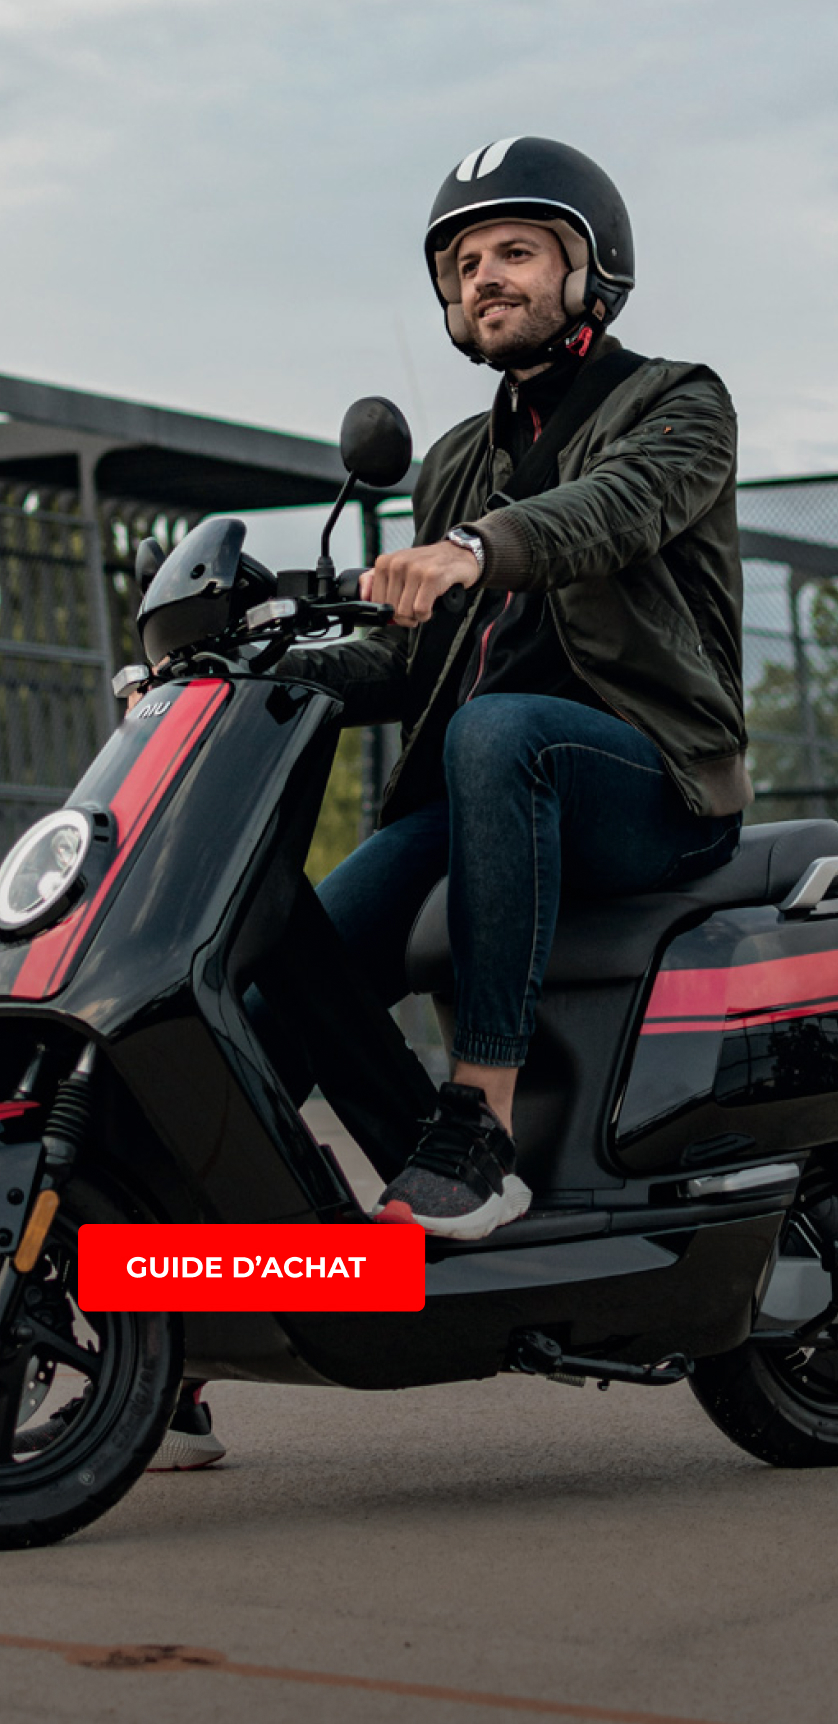 Guide d'achat équipement moto et scooter : le top du casque